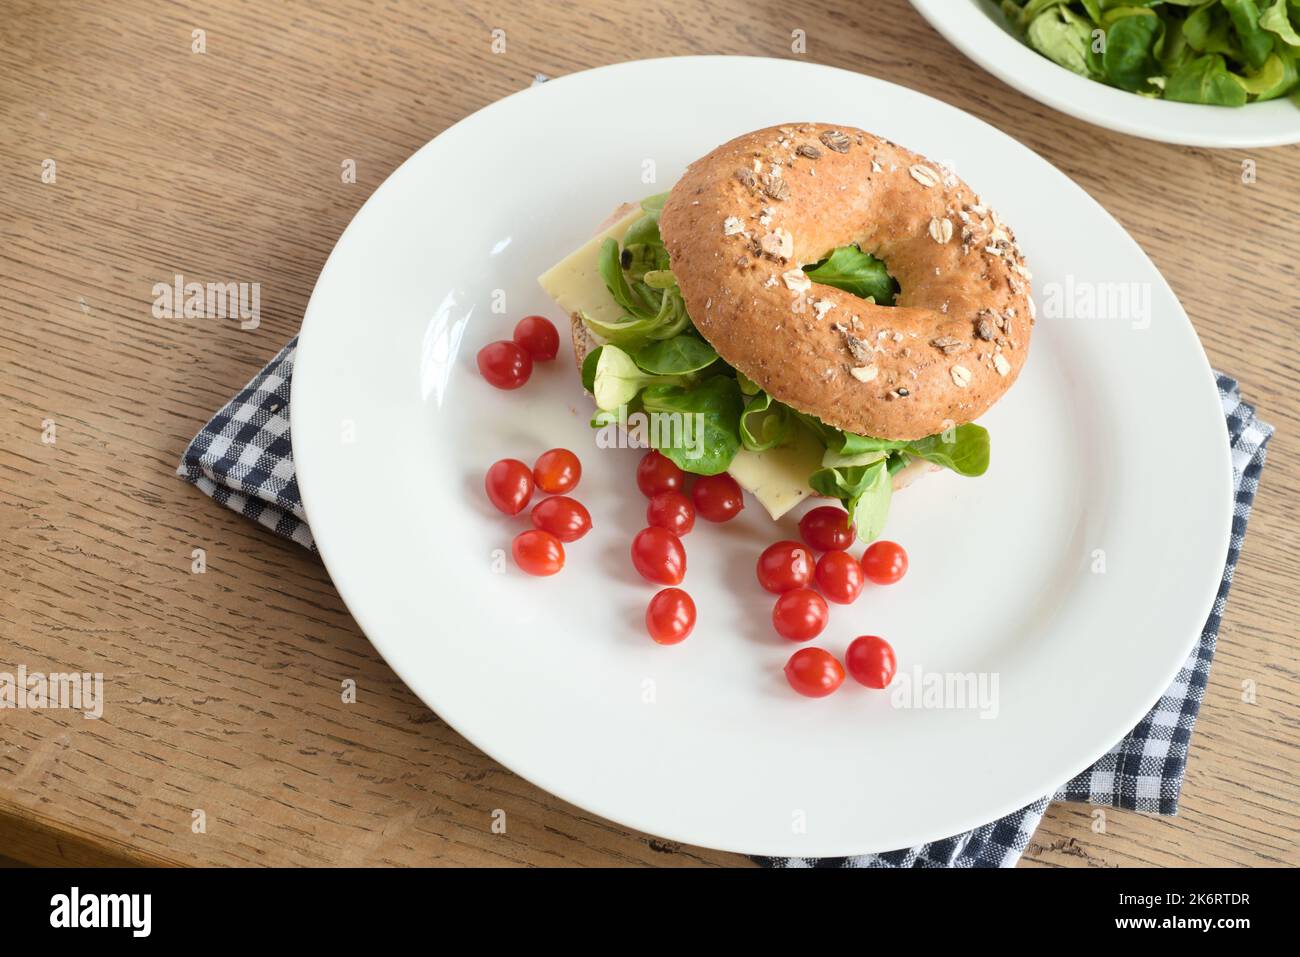 Sandwich au bagel avec fromage, feuilles de laitue verte et tomates cerises sur une assiette Banque D'Images